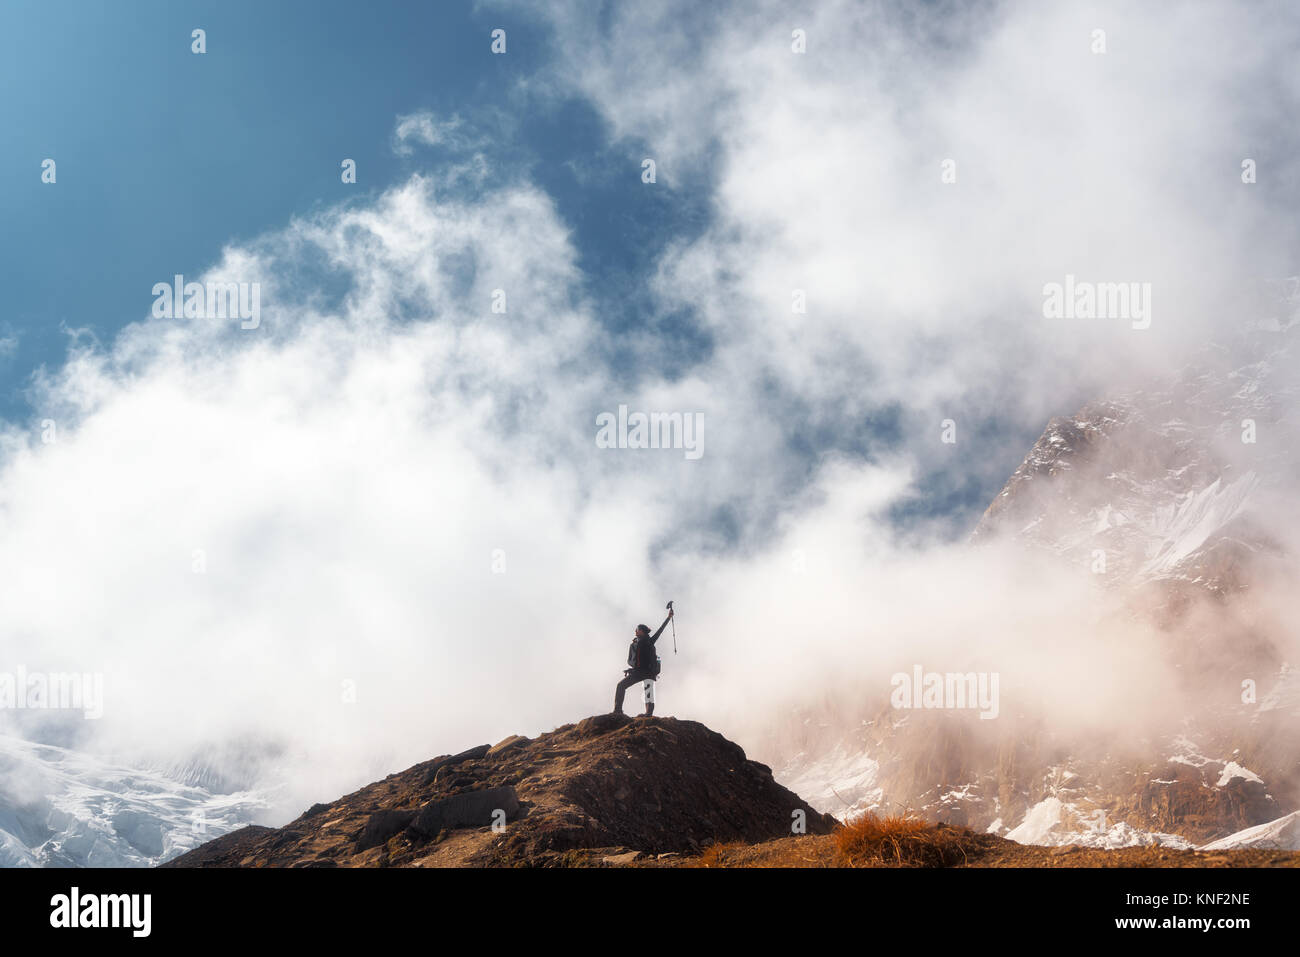 Stehende junge Frau mit erhobenen Armen auf dem Gipfel gegen den blauen Himmel mit Wolken in den hellen Tag. Landschaft mit Happy girl auf dem Hügel, s Stockfoto